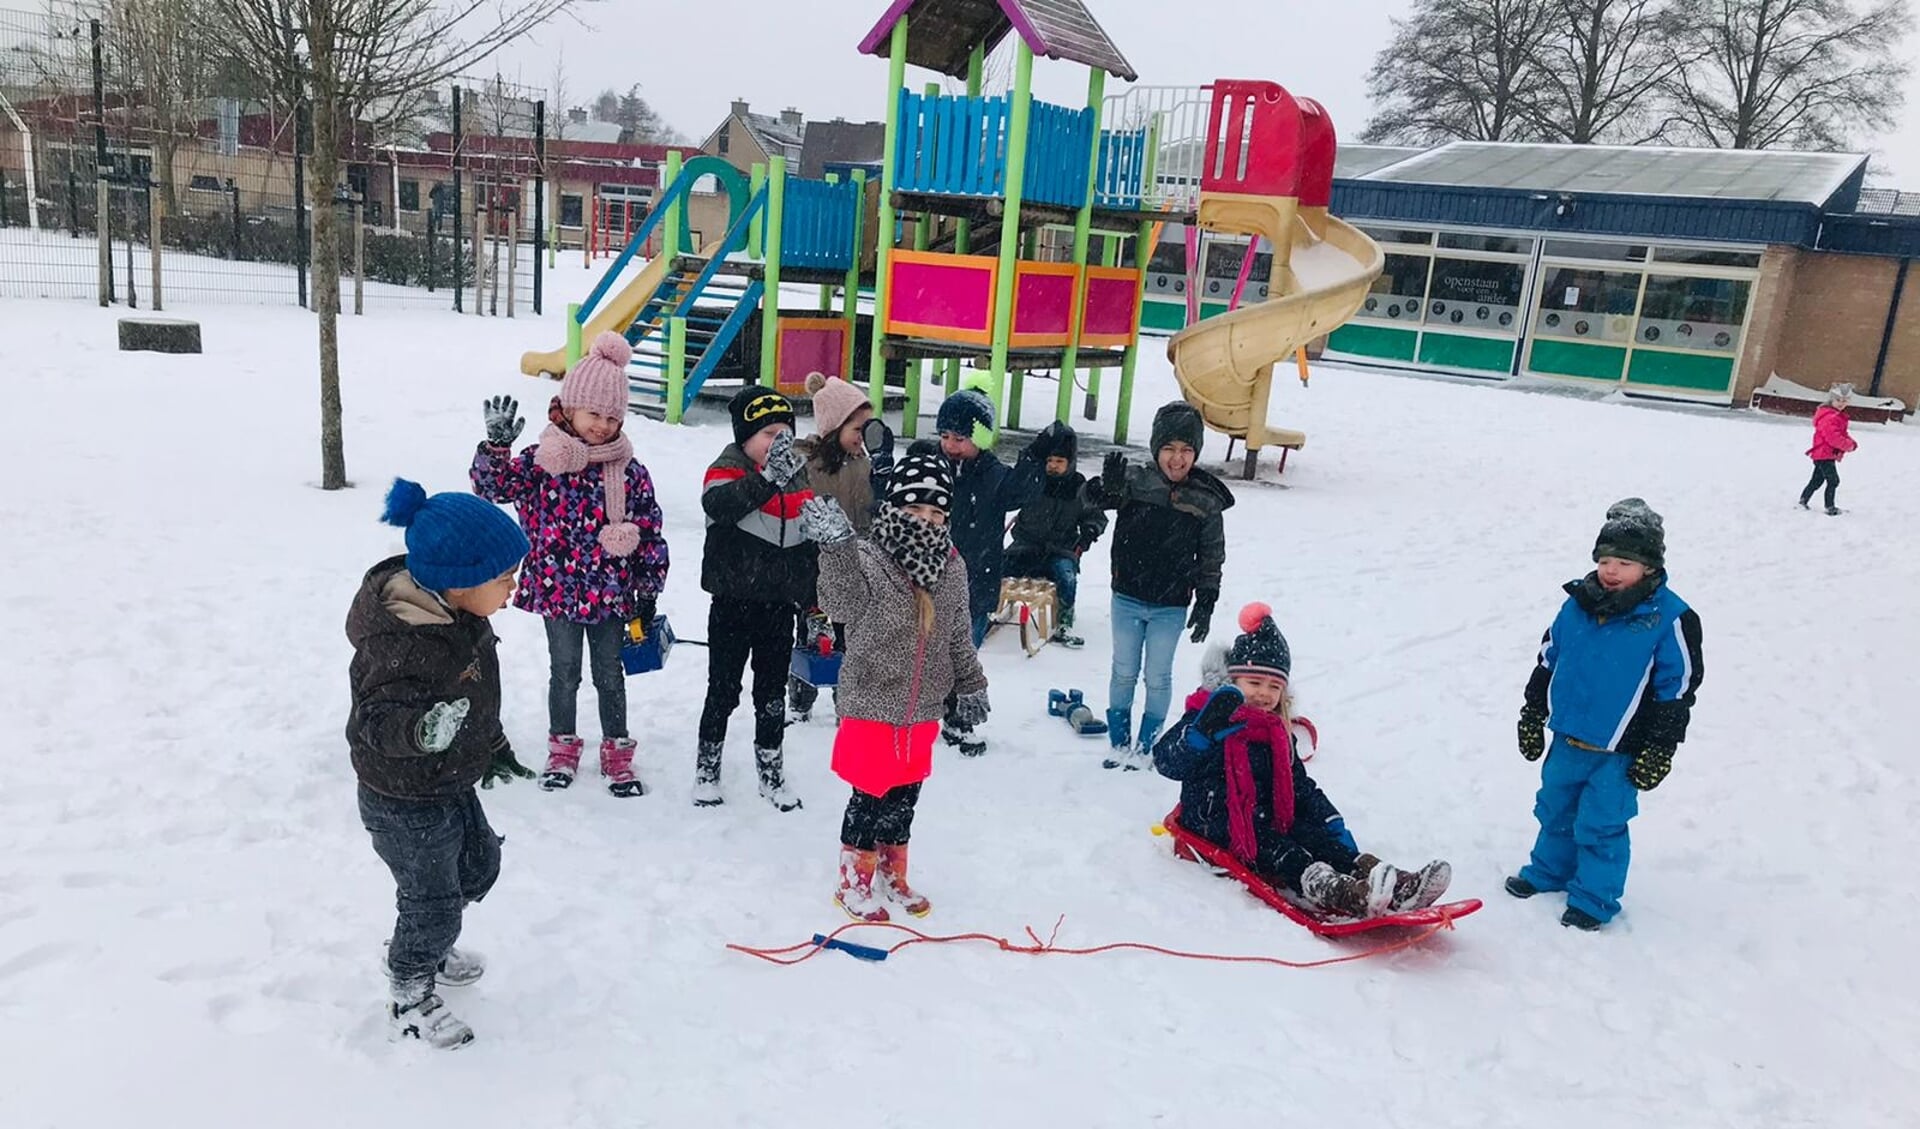 Het Palet en De Vlonder waren vandaag open voor de leerlingen en leerkrachten die naar school konden komen en zij hadden ook flinke lol in de sneeuw